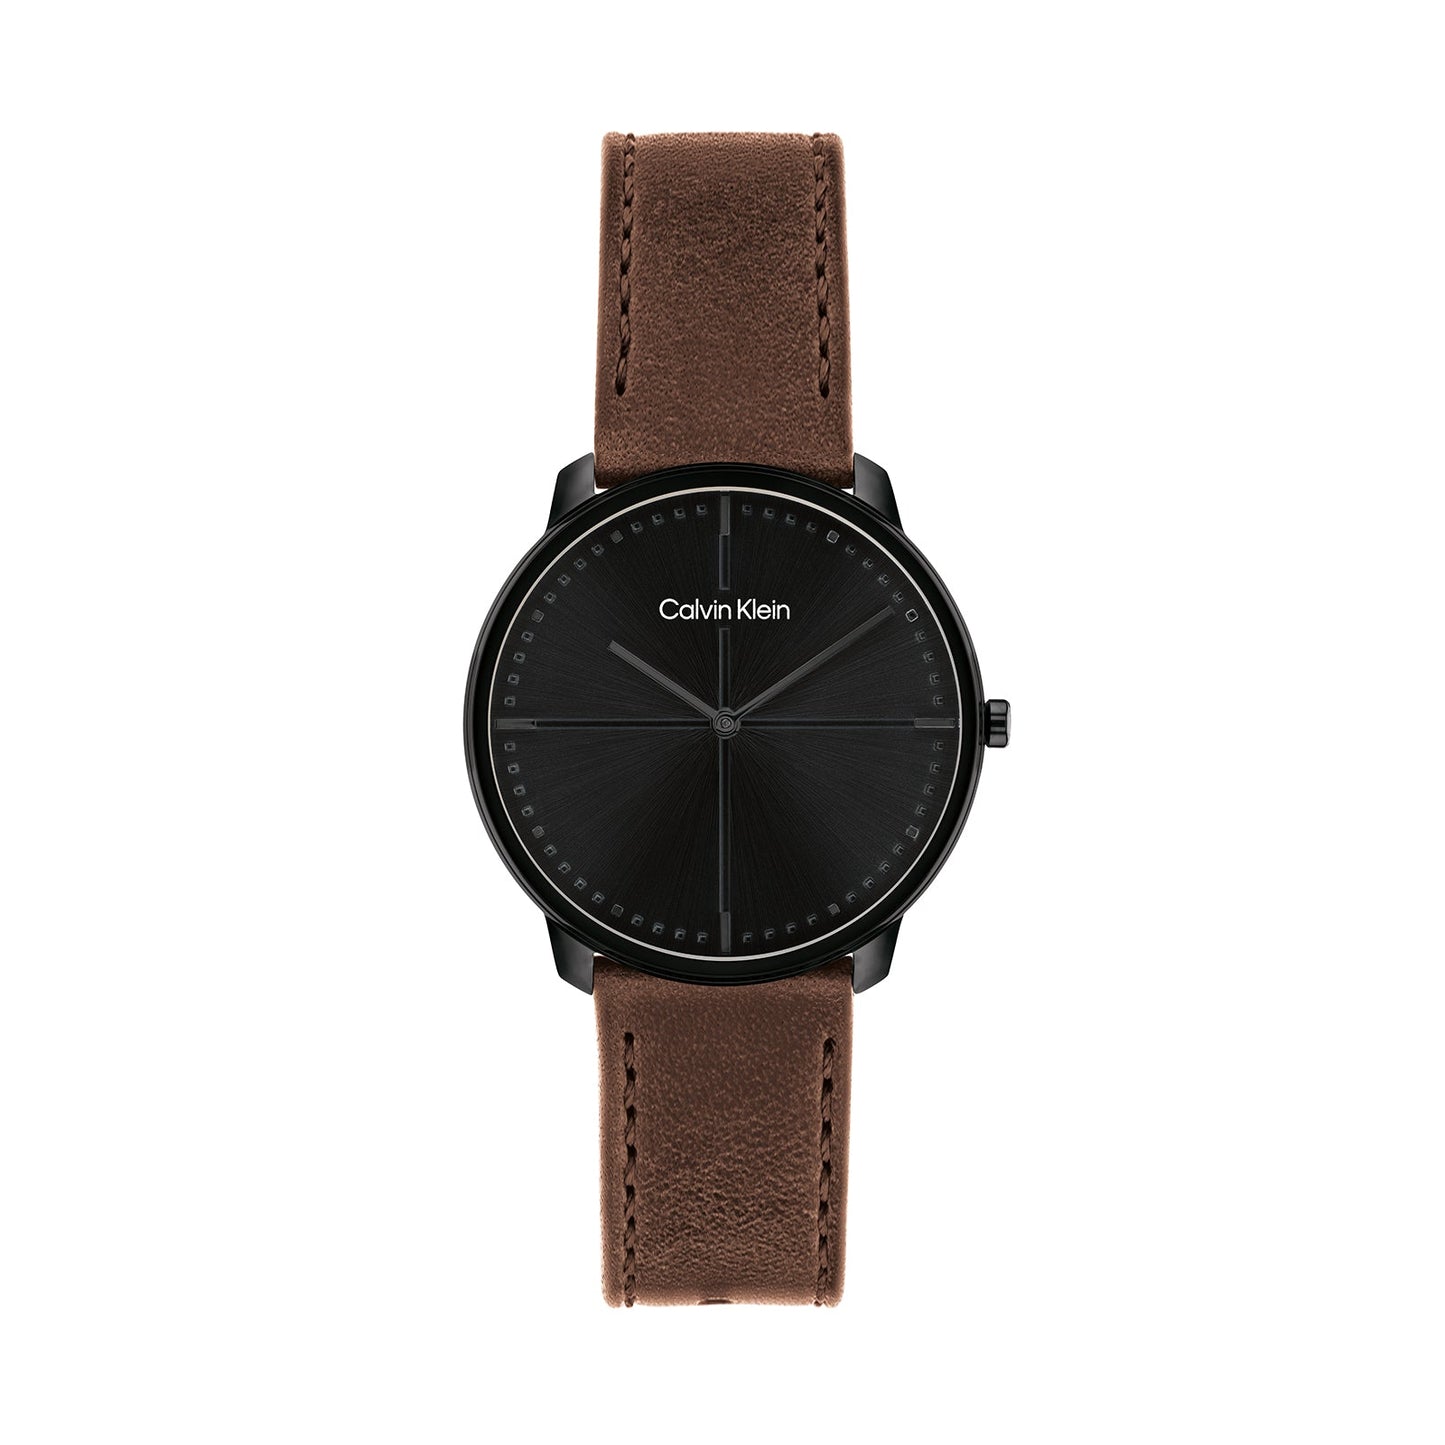 Calvin Klein 25200155 Unisex Leather Strap Watch